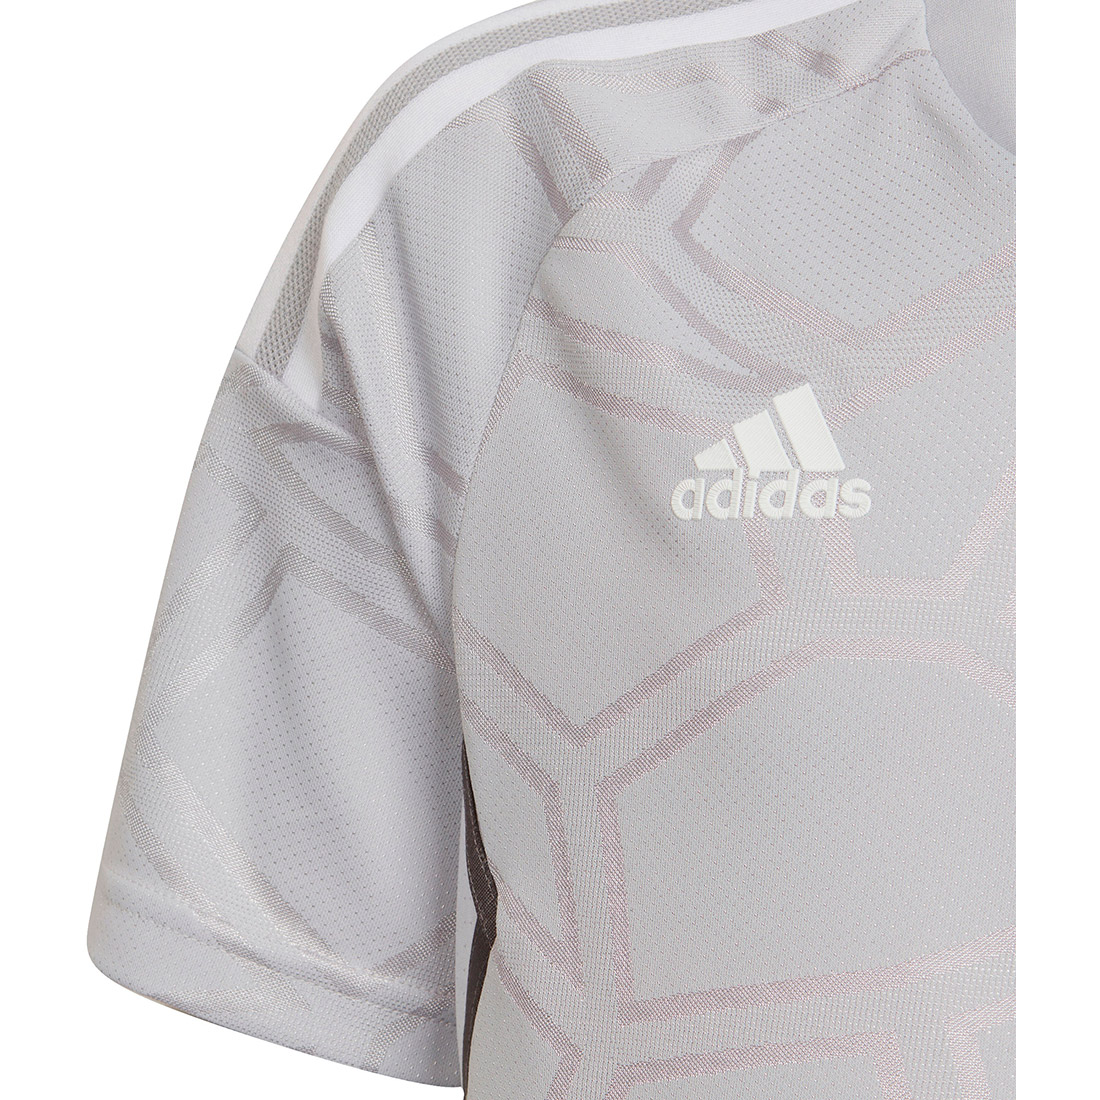 Adidas Kinder Condivo Trikot MD online grau-weiß 22 kaufen